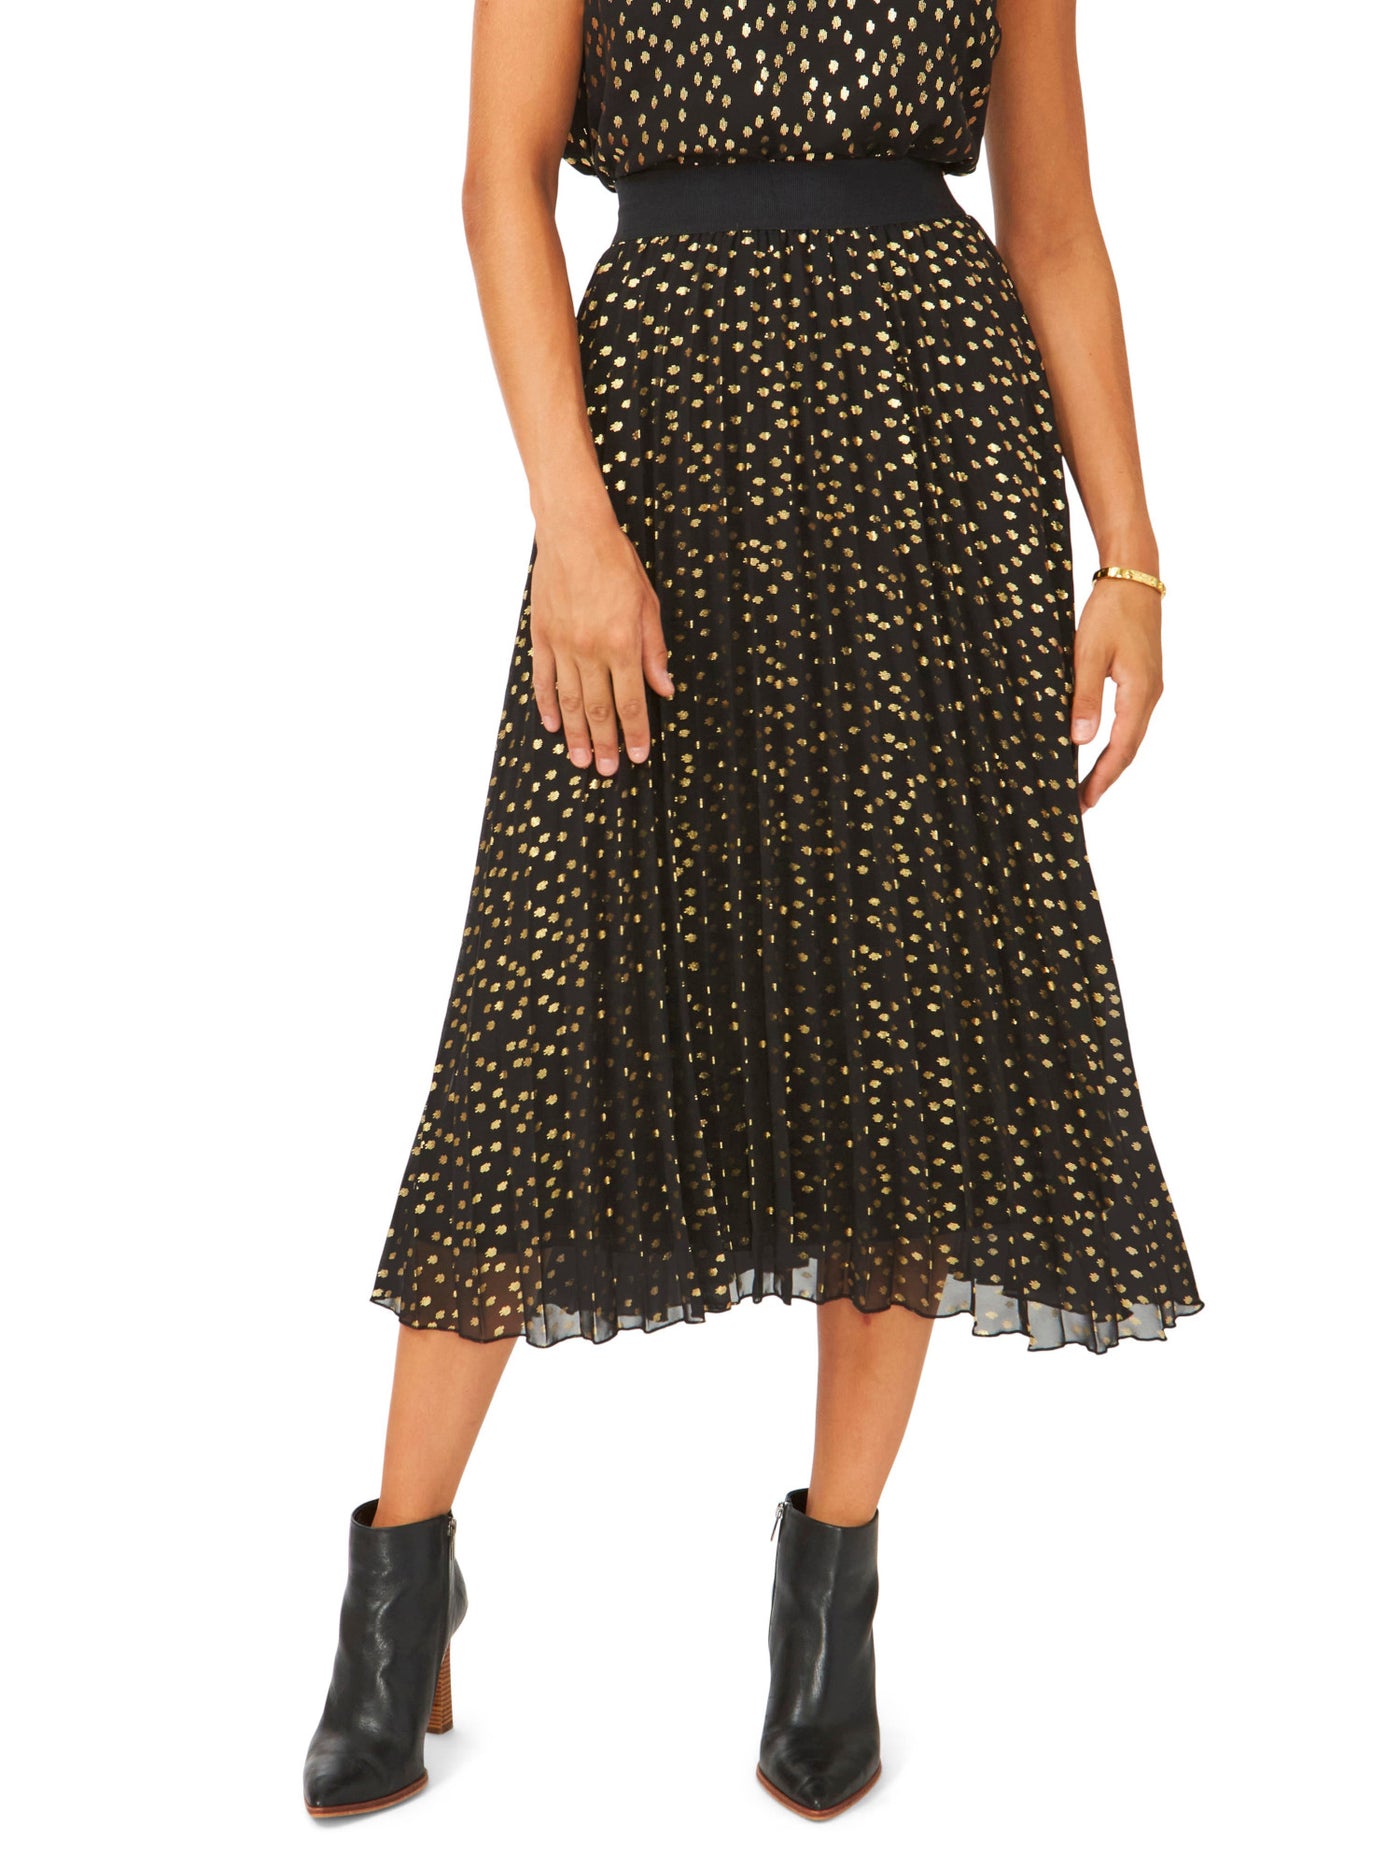 VINCE CAMUTO Womens Black Lined Elastic Waist Pull-on Printed Midi Pleated Skirt XL